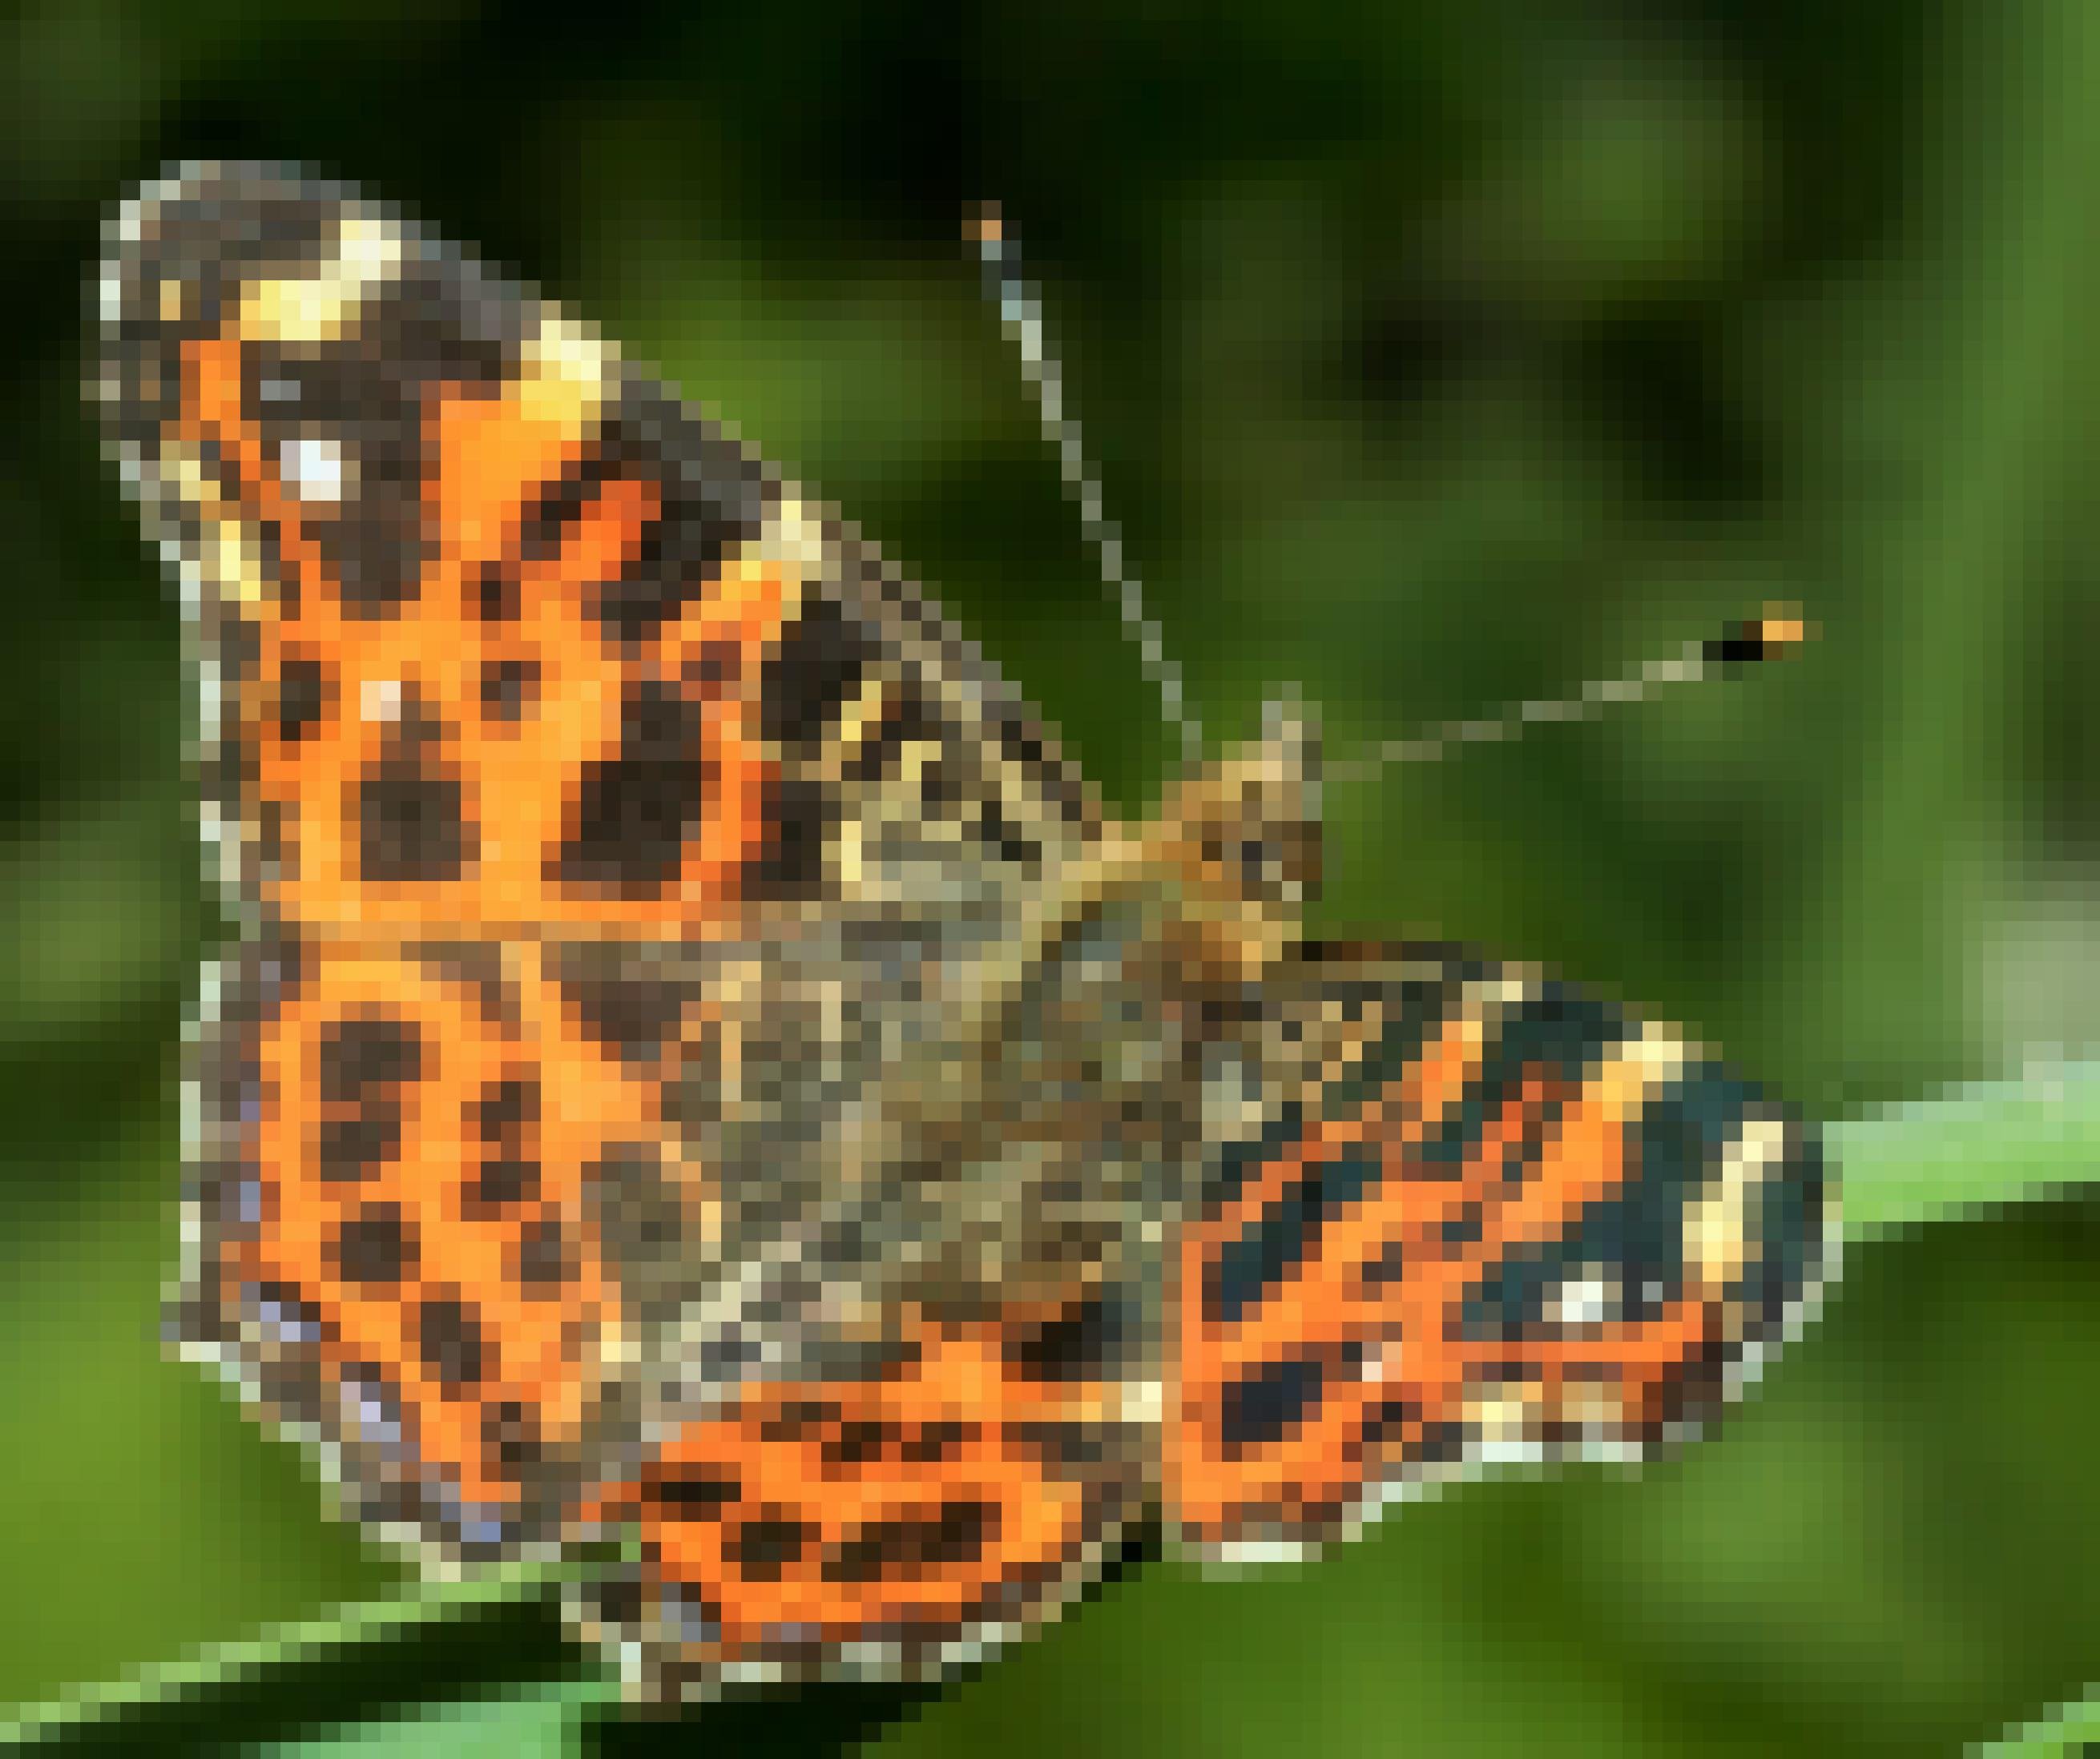 Ein Schmetterling mit orangenen Flügeln mit schwarzen Mustern.